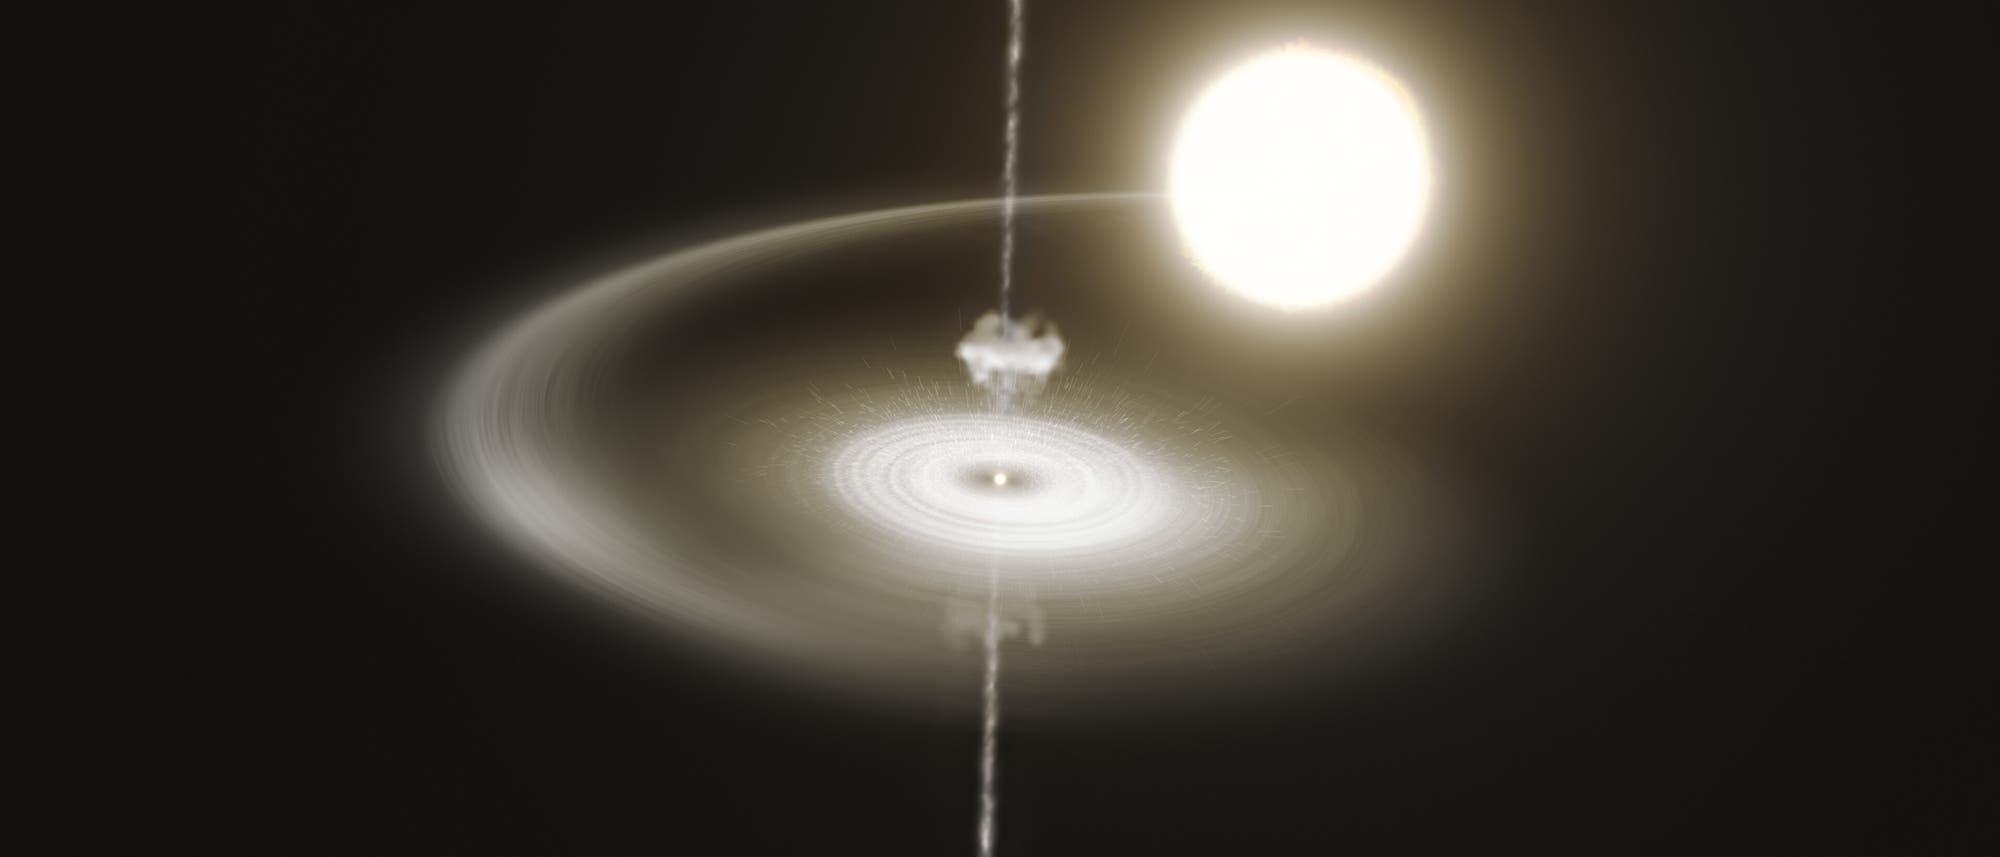 Doppelsternsystem Pulsar PSR J1023+0038 (Illustration)